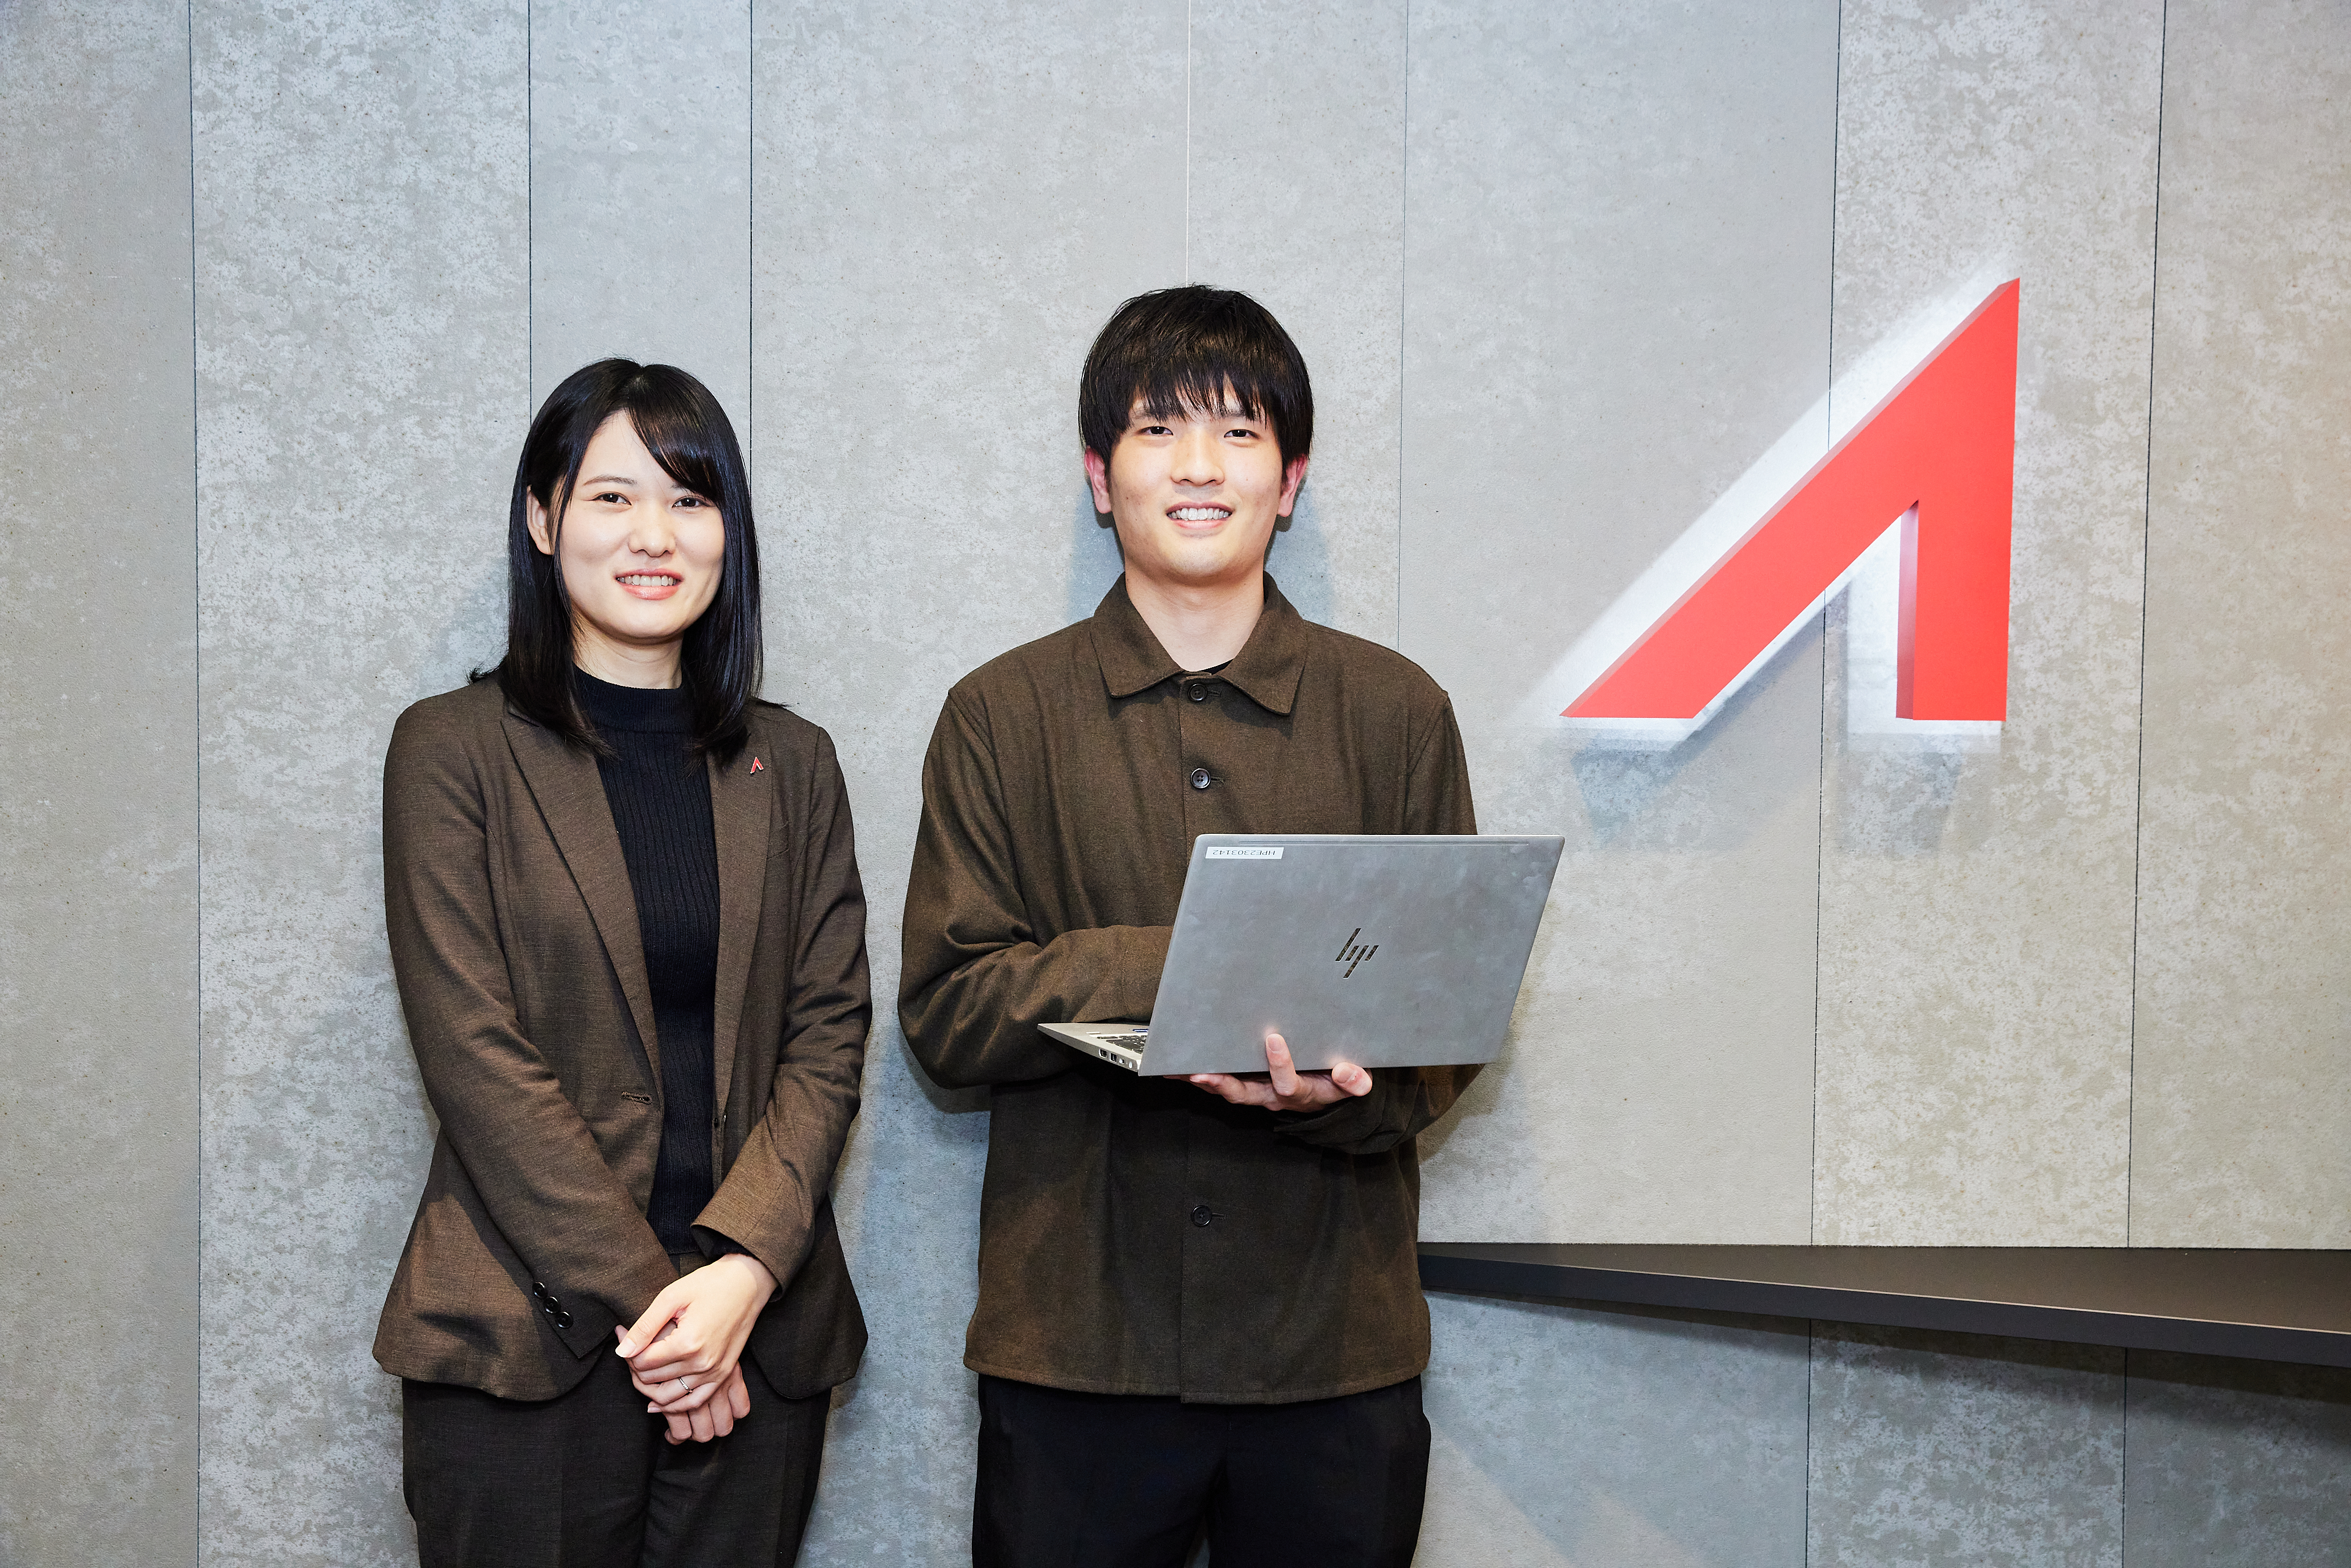 福岡県福岡市を本社とする同社は、明治5年創業の麻生グループの一社であり、1995年の設立以来多岐にわたる人材サービスで実績を重ねてきた。